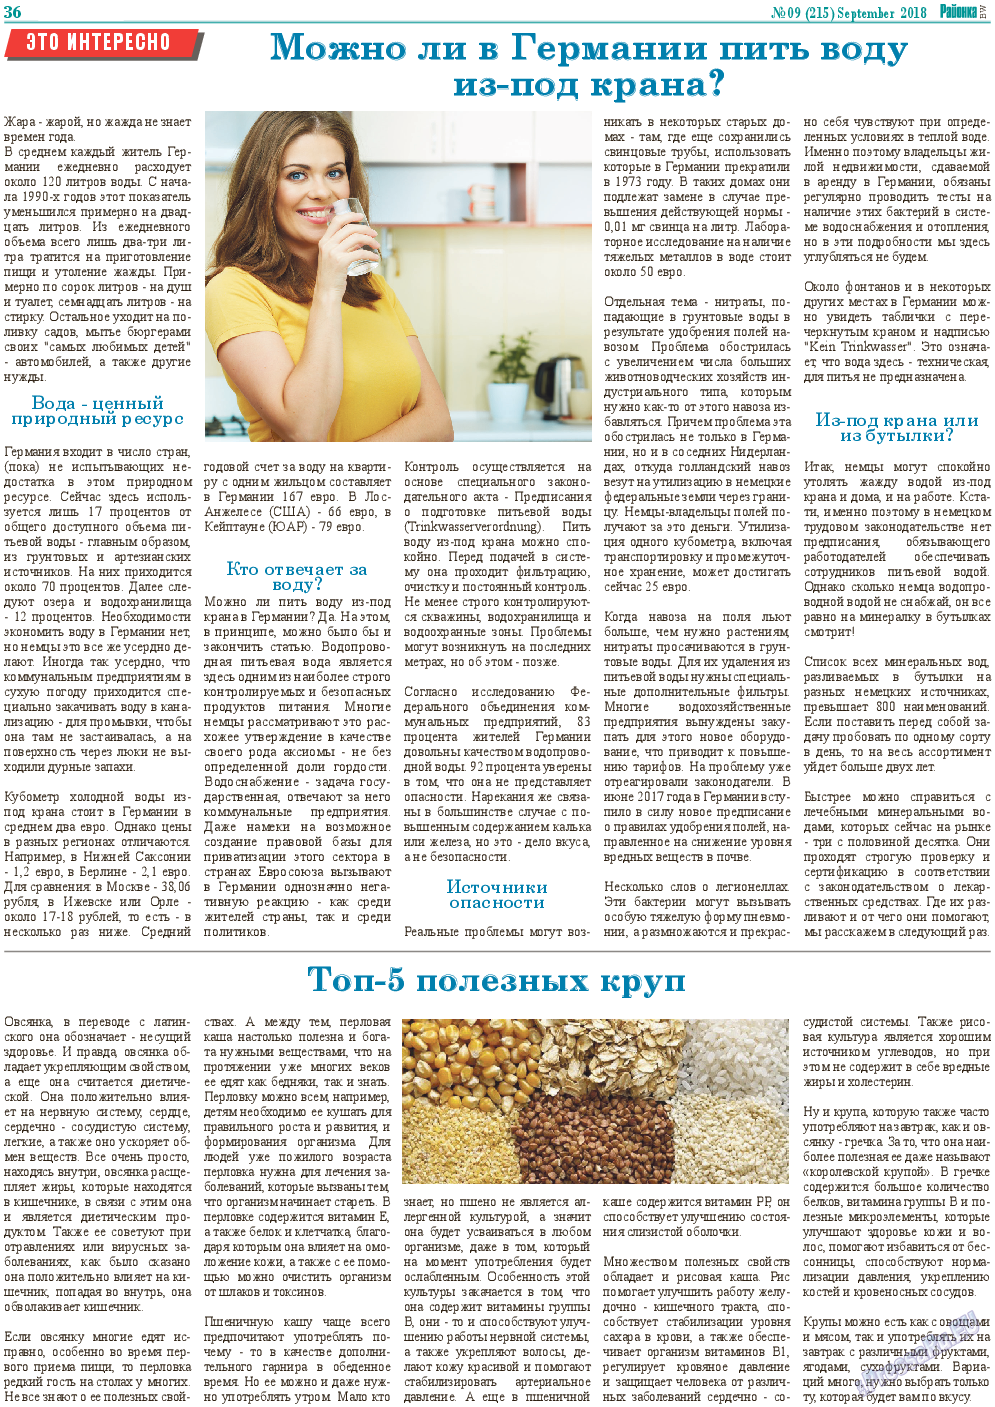 Районка-Süd-West, газета. 2018 №9 стр.36